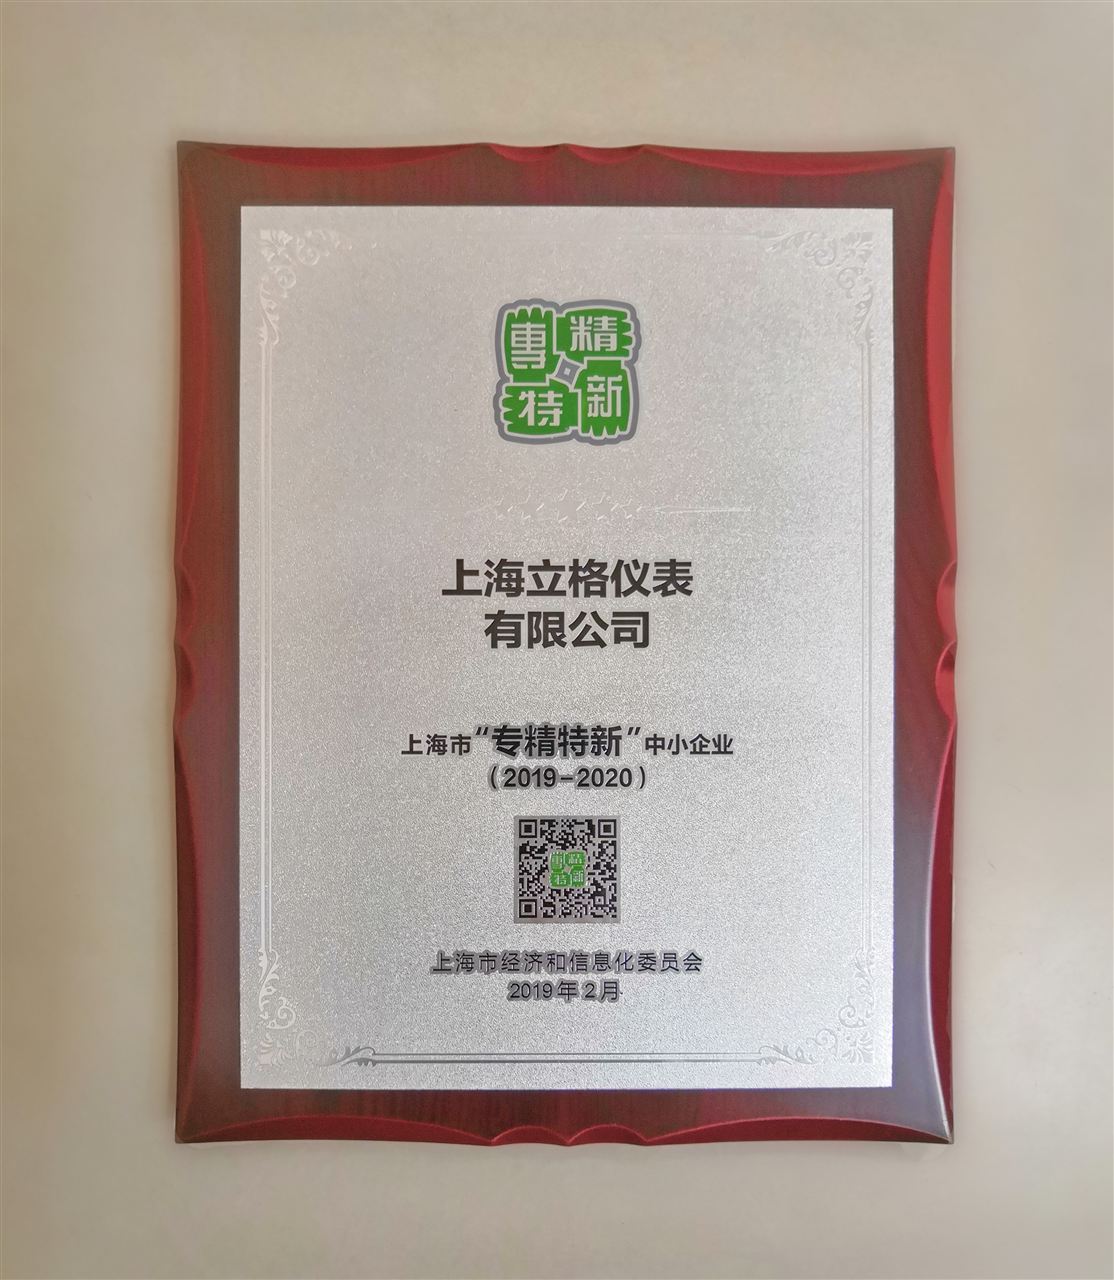 上海立格仪表有限公司“专精特新”中小企业荣誉的证书